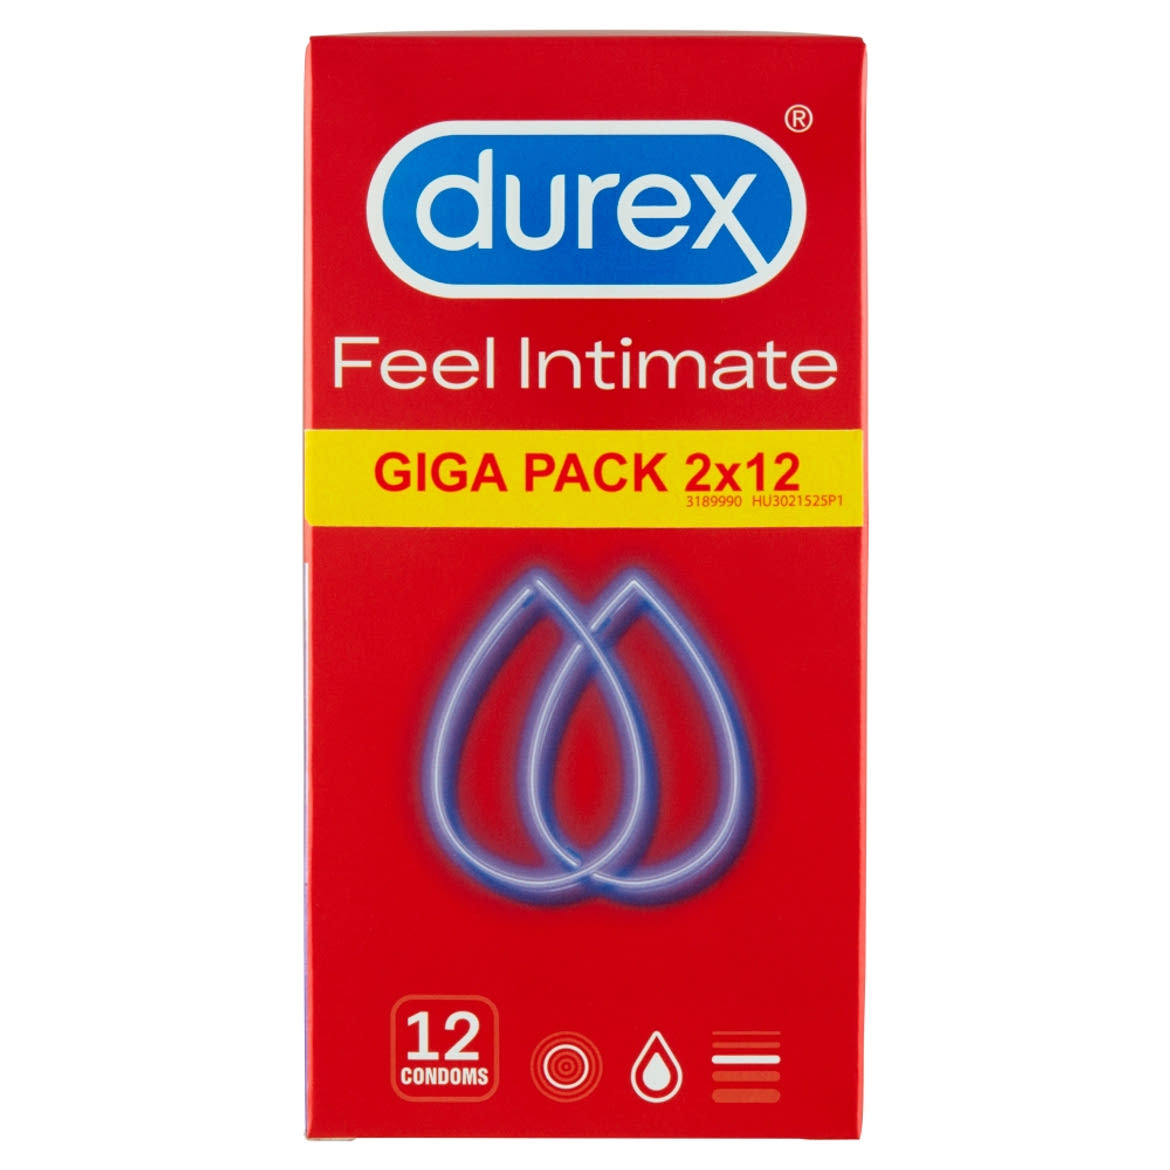 Durex Feel Intimate óvszer